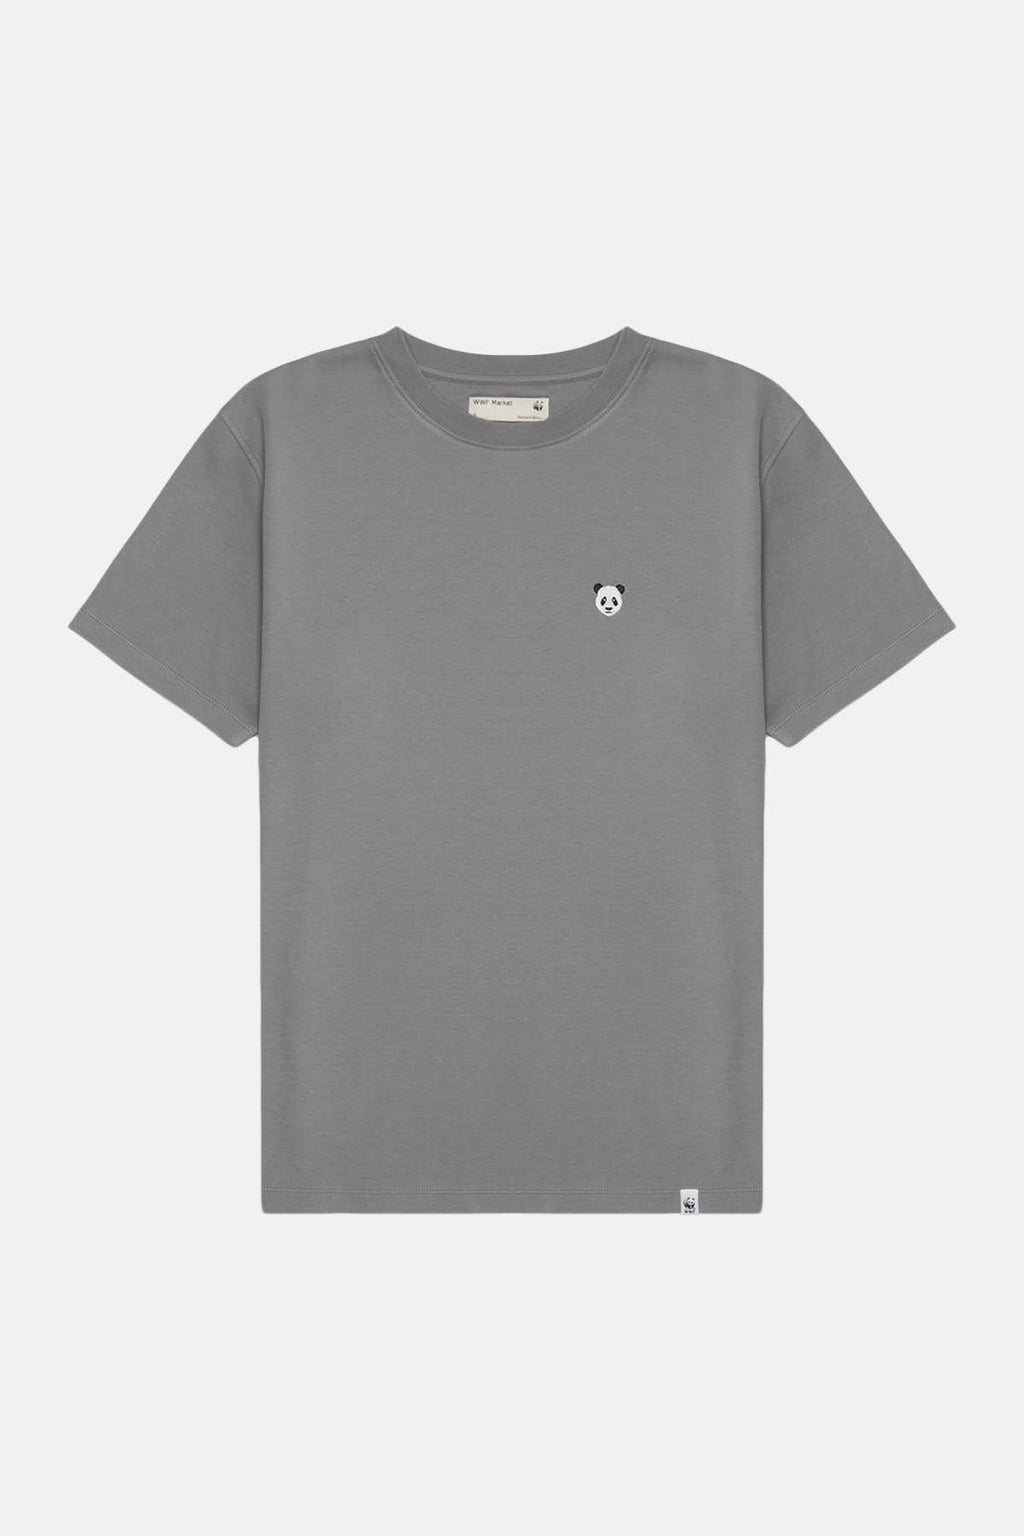 Panda Premium T-shirt - Gri